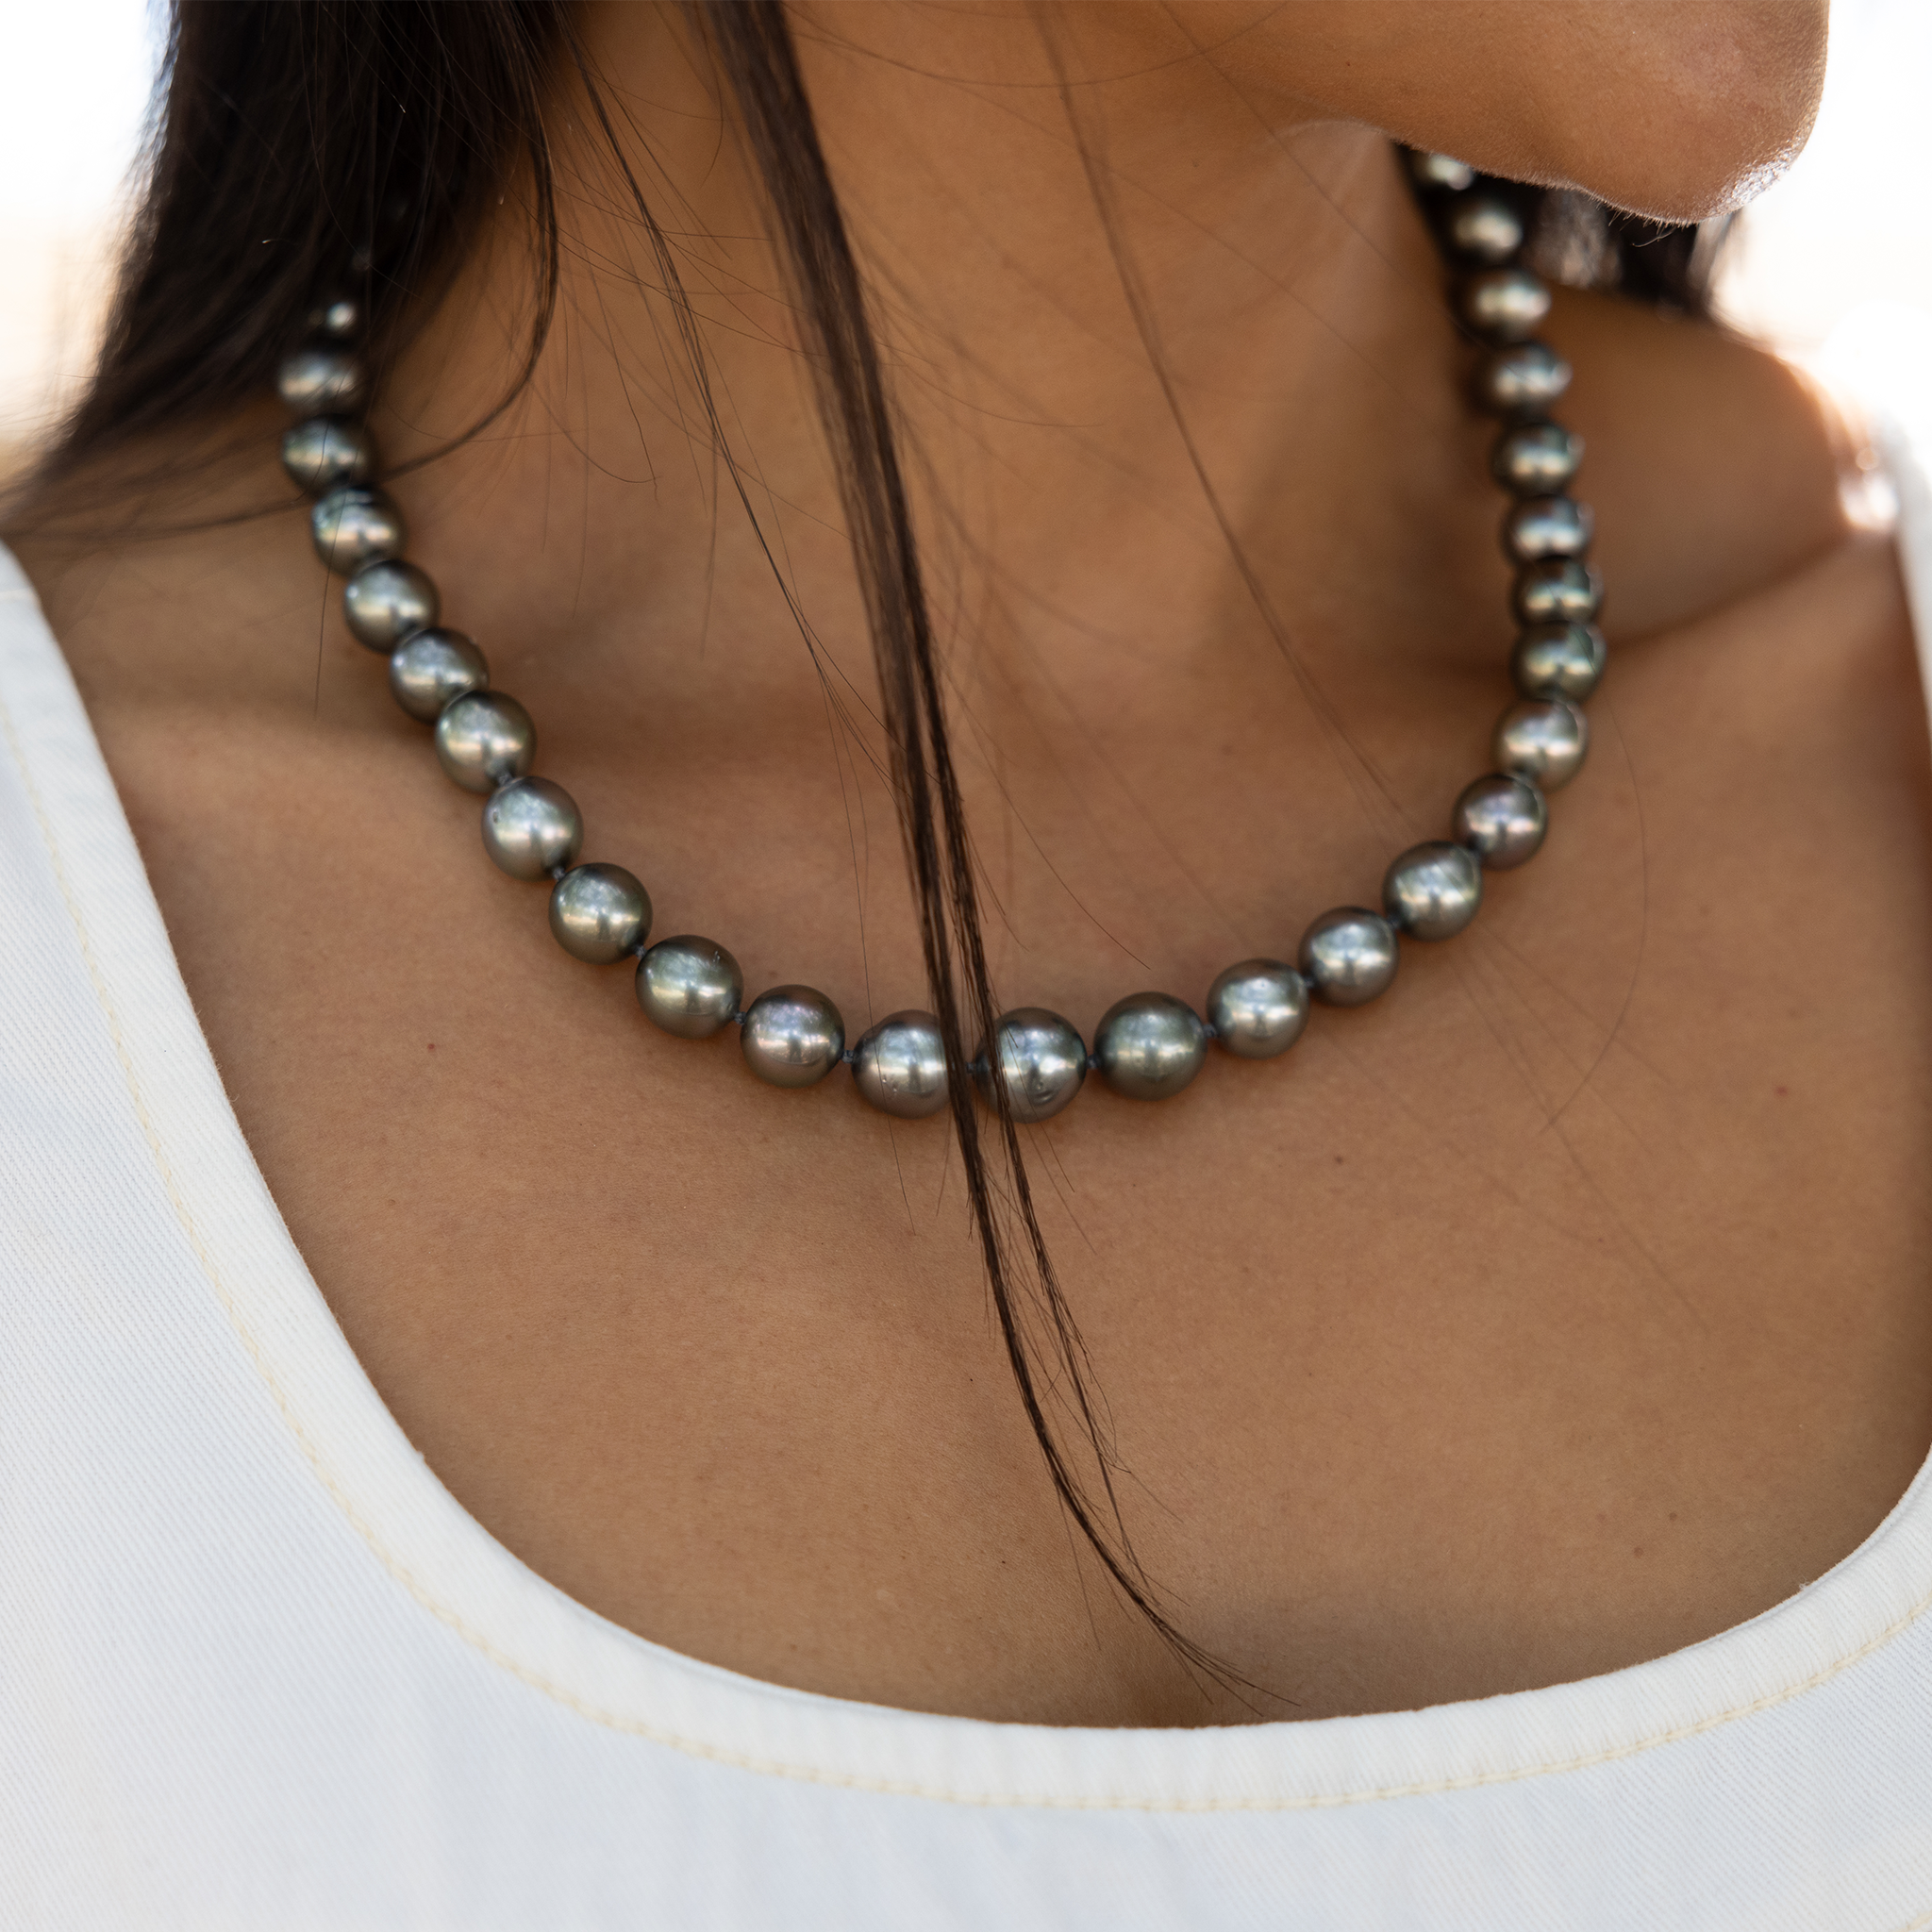 18-19 "brin de perle noir tahitien avec fermoir en or - 10-12 mm